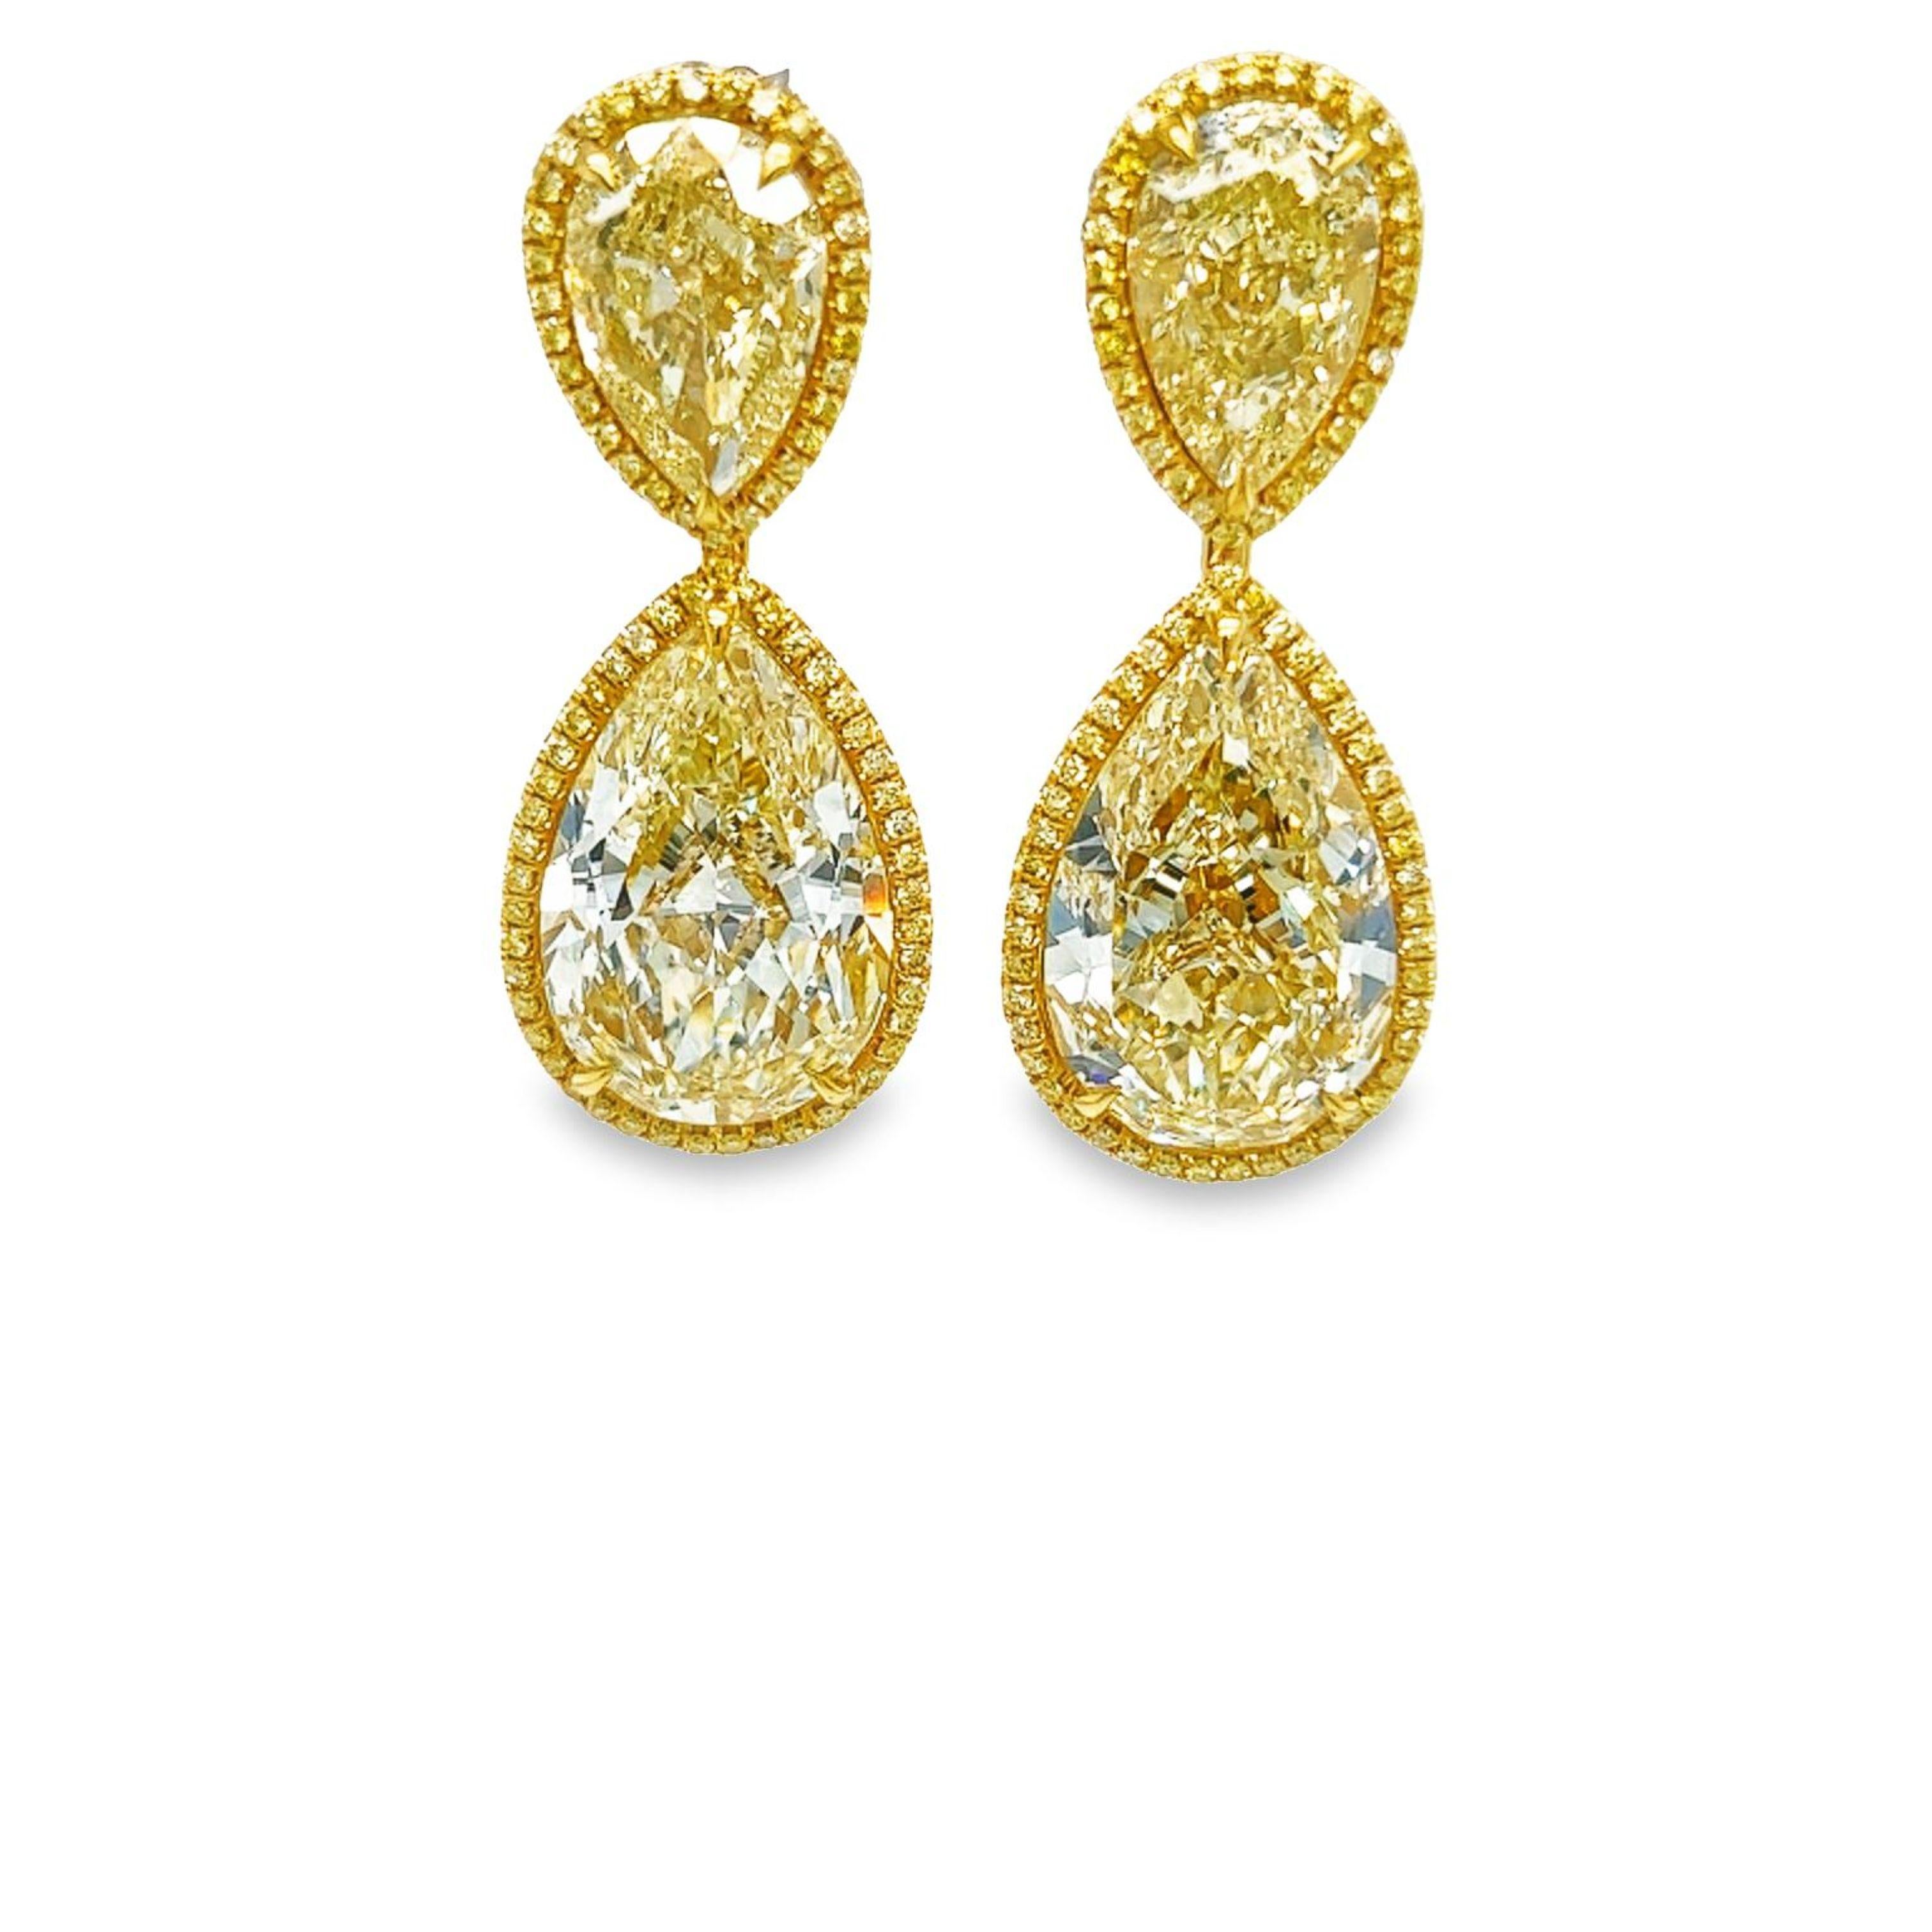 Machen Sie sich bereit für eine Nacht mit diesem Kiefer fallen gelben Diamanten Birne Form Ohrringe VS - VVS Klarheit. Diese wunderschönen, leichten Ohrringe sind in 18 Karat Gelbgold gefasst und von einem schönen gelben Halo mit 0,82 Karat